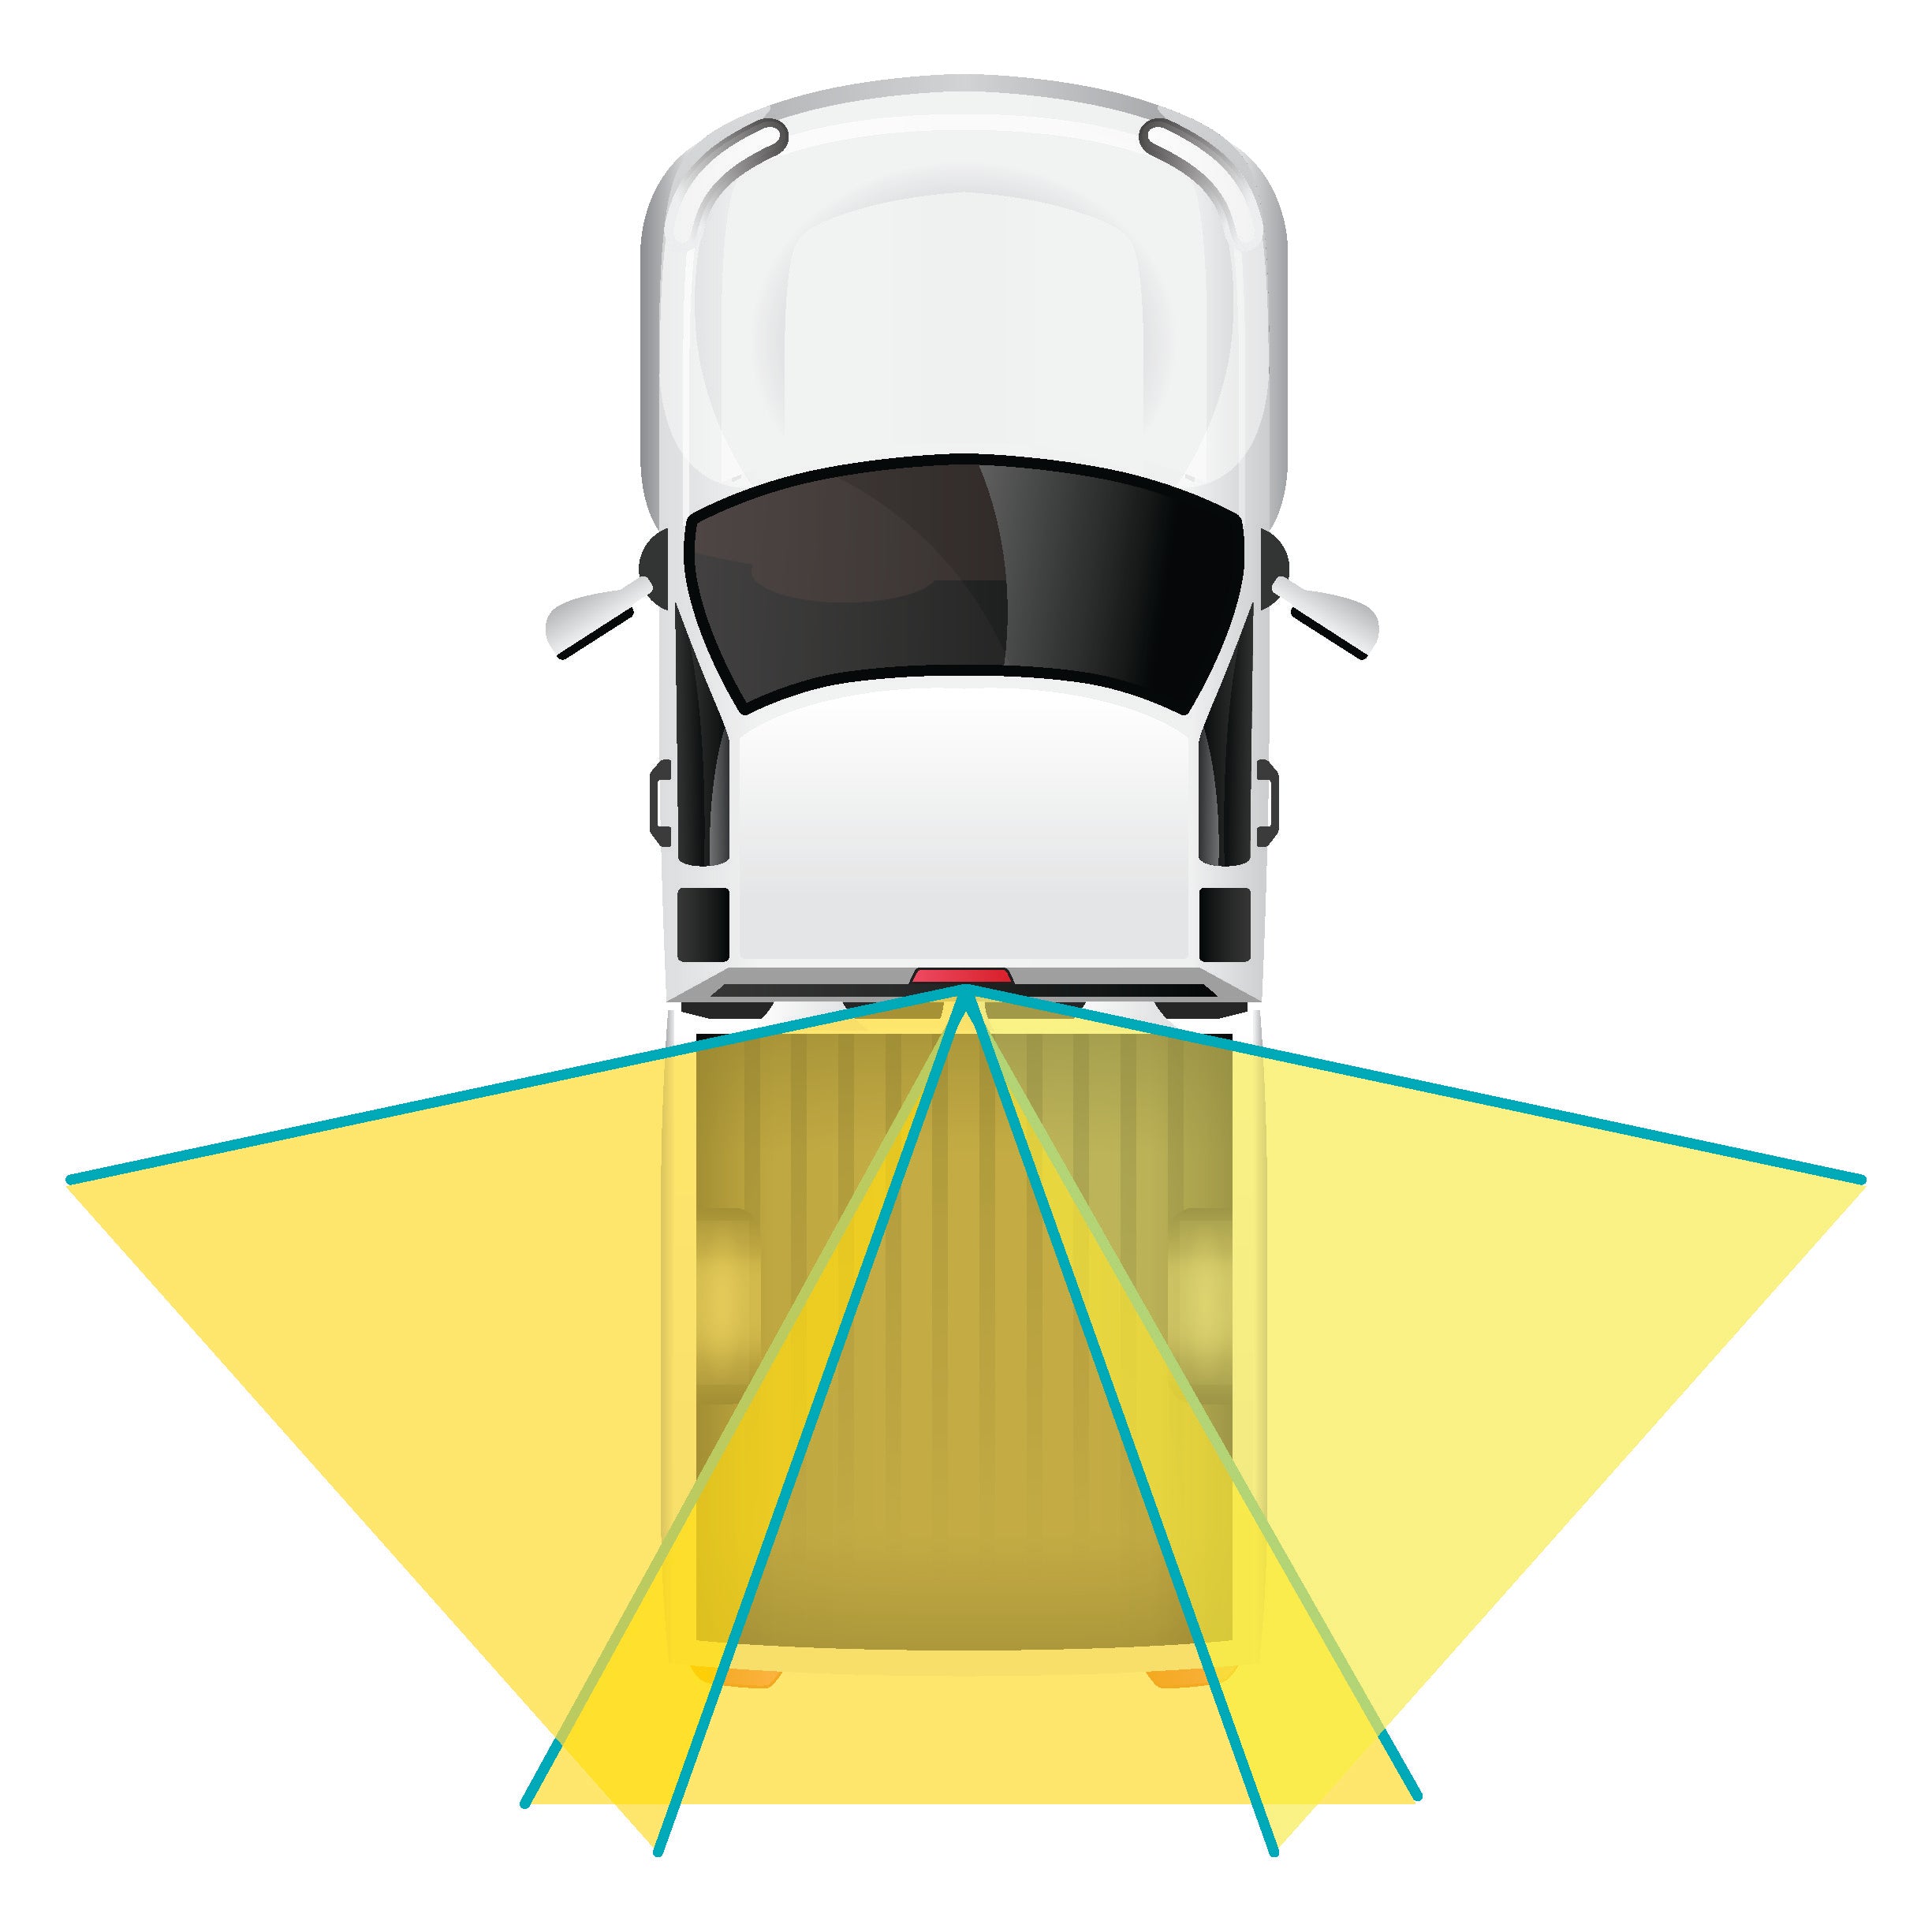 Chevy Silverado/GMC Sierra (2014-2019) Third Brake-Light Camera (Non-Factory Radios)